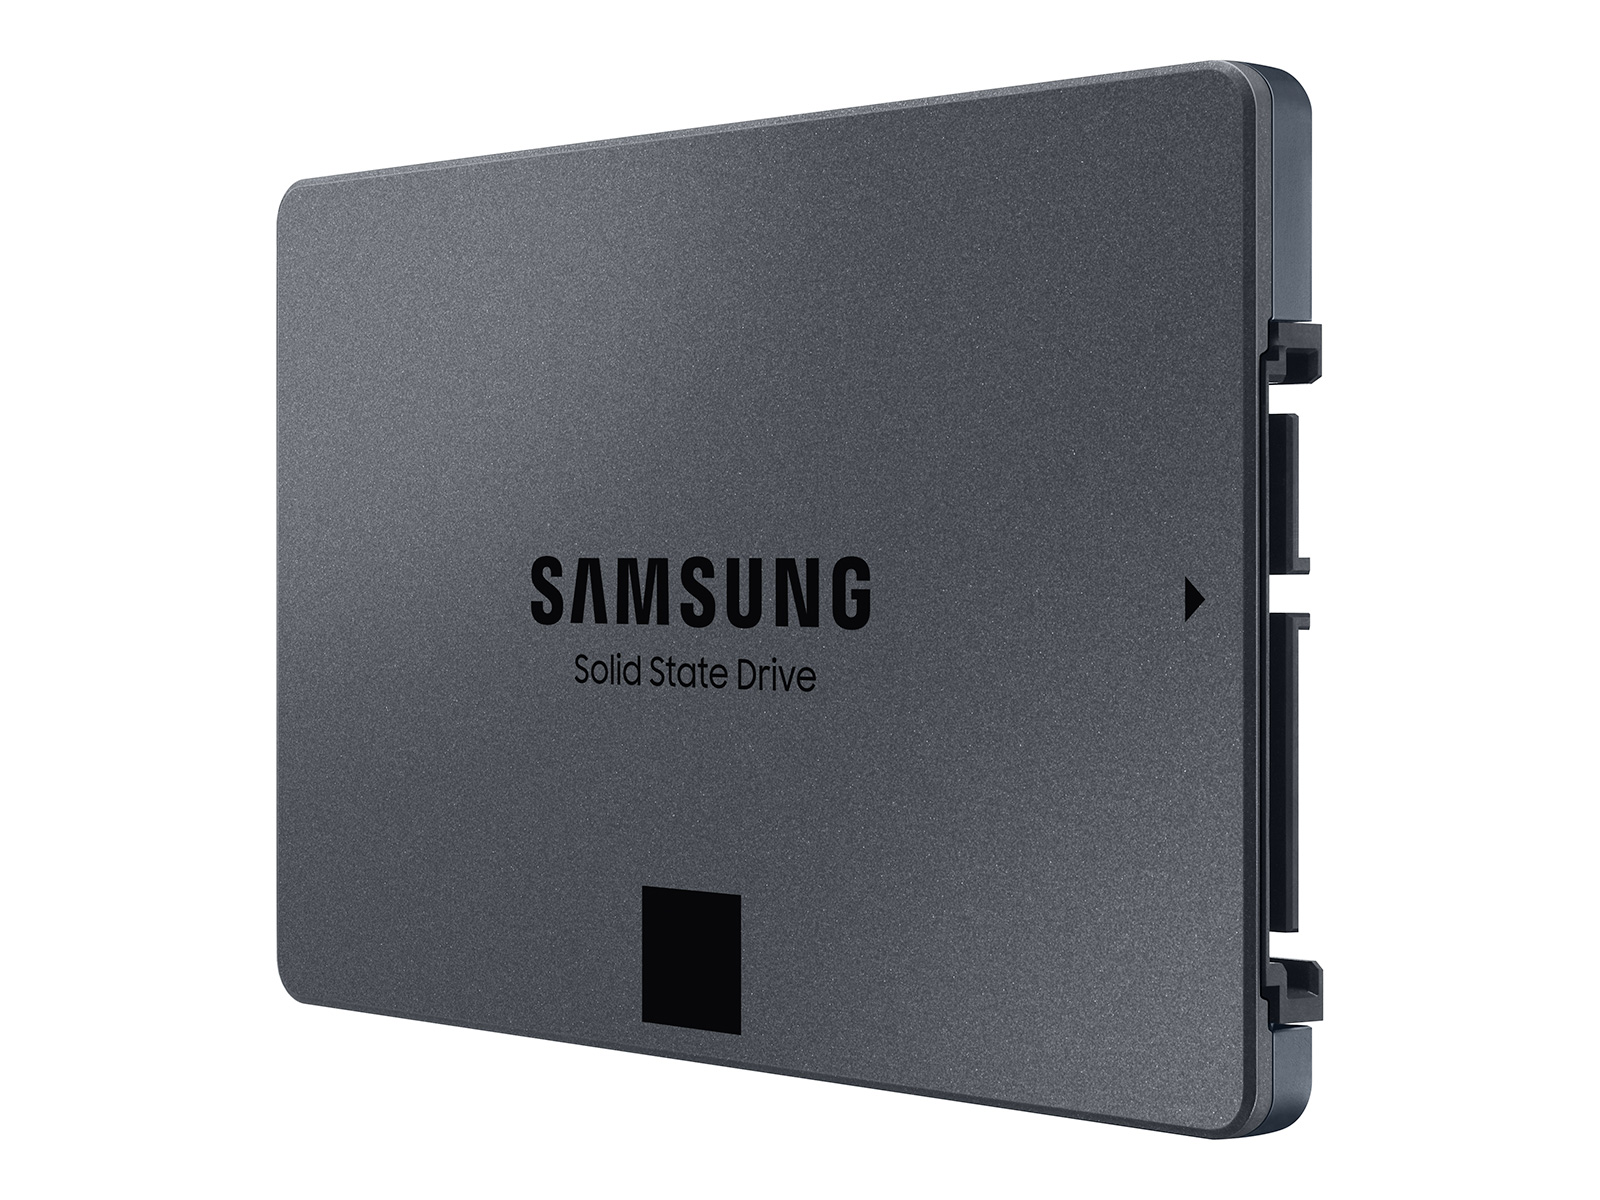 870 QVO SATA III 2.5 SSD 1TB Memory & Storage - MZ-77Q1T0B/AM